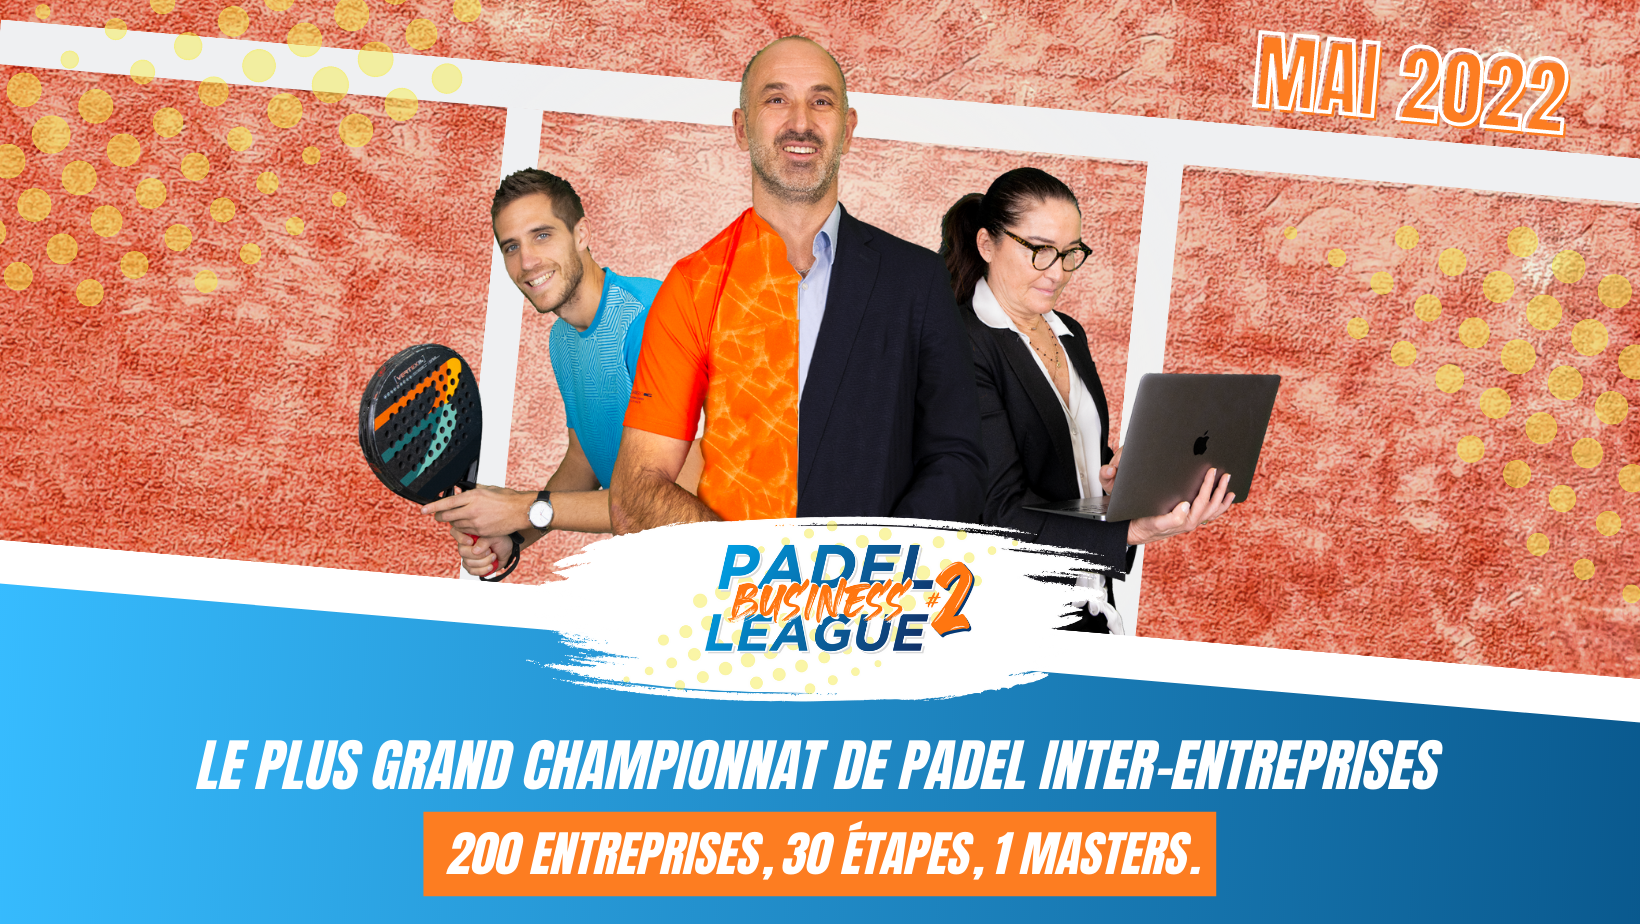 Padel Business League: en första upplaga som avslutas framgångsrikt!